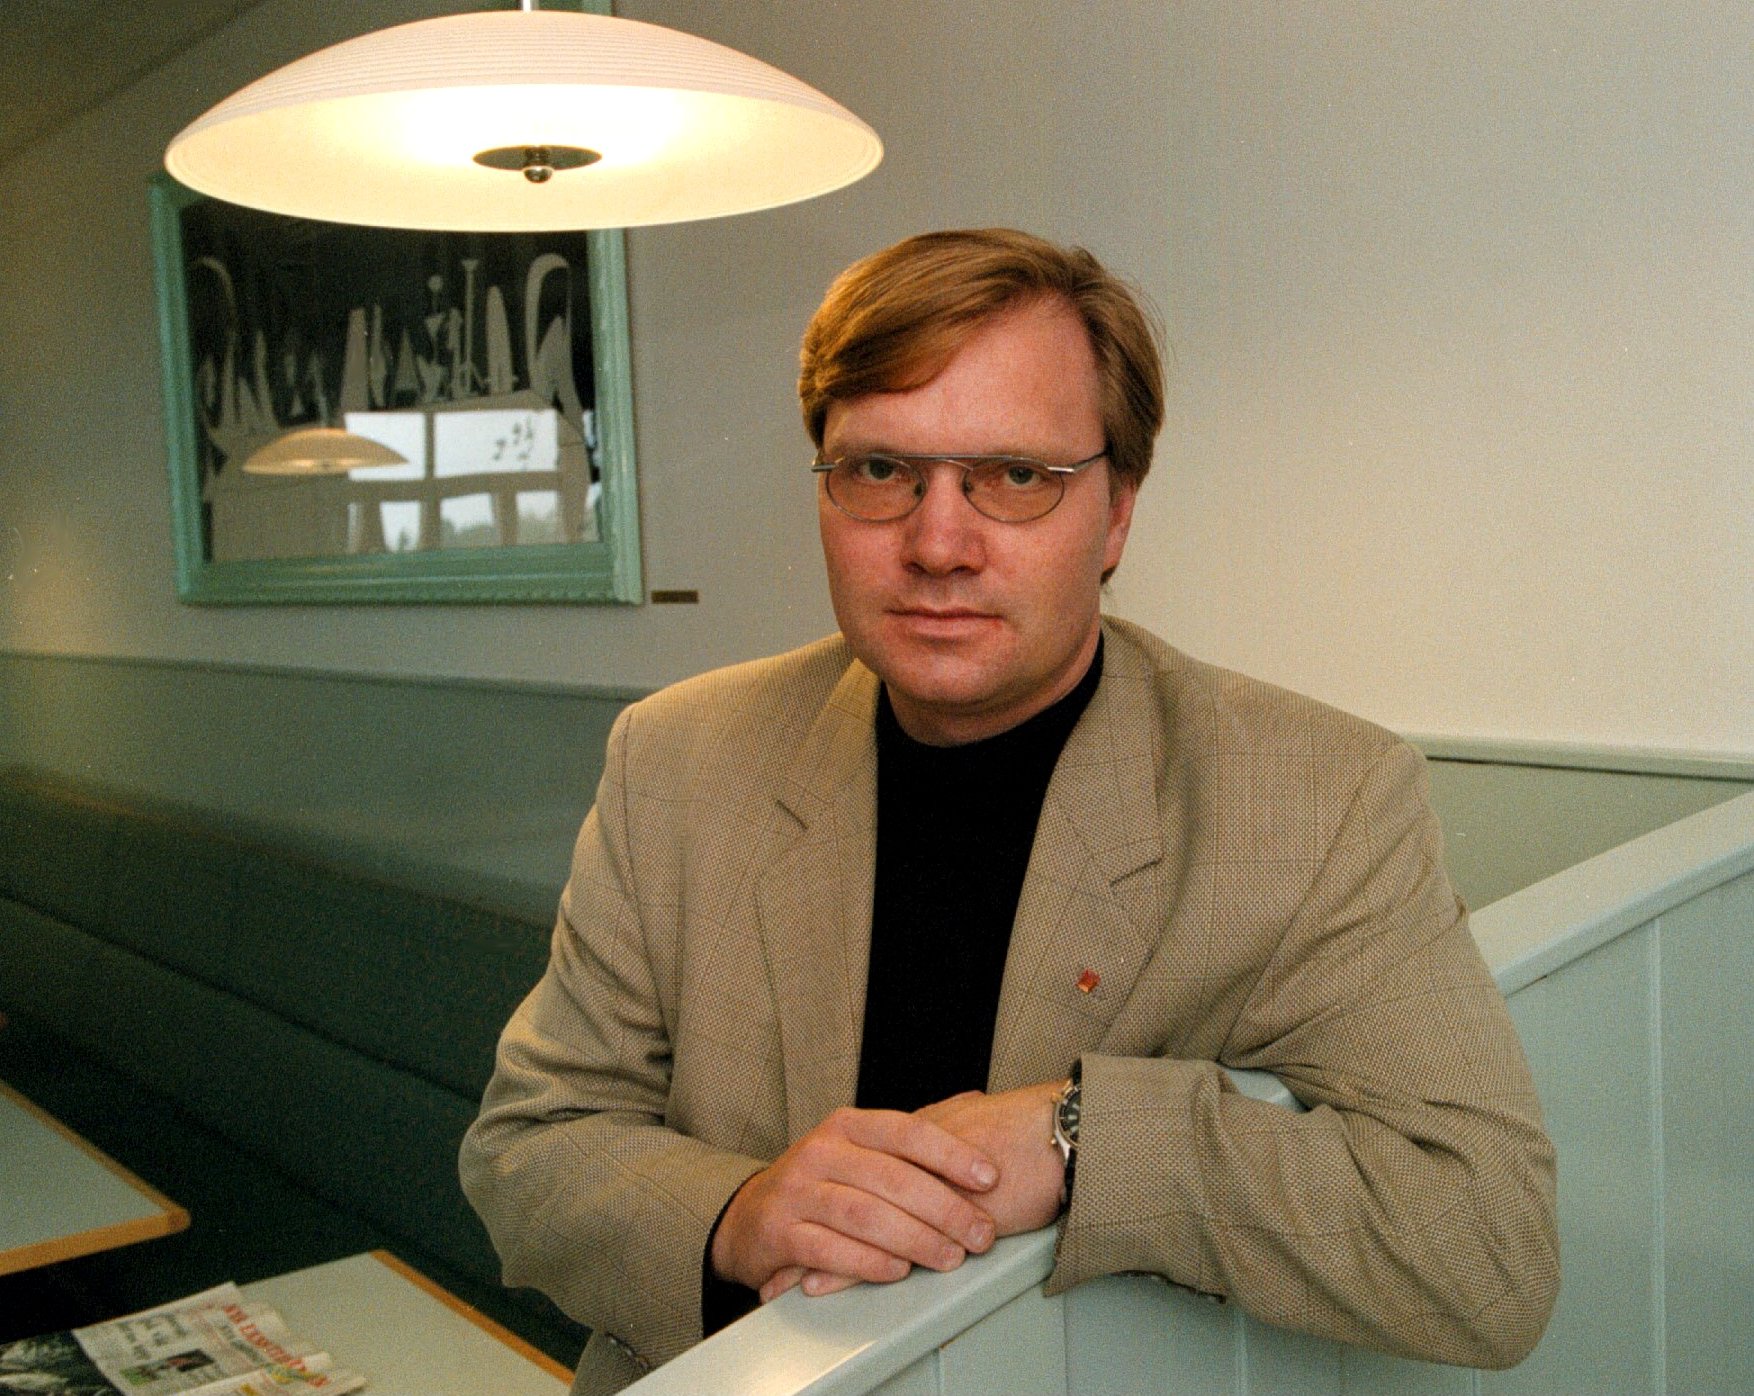 Riksdagsvalet 2010, Kidnappning, Socialdemokraterna, Rödgröna regeringen, Tomas Rudin